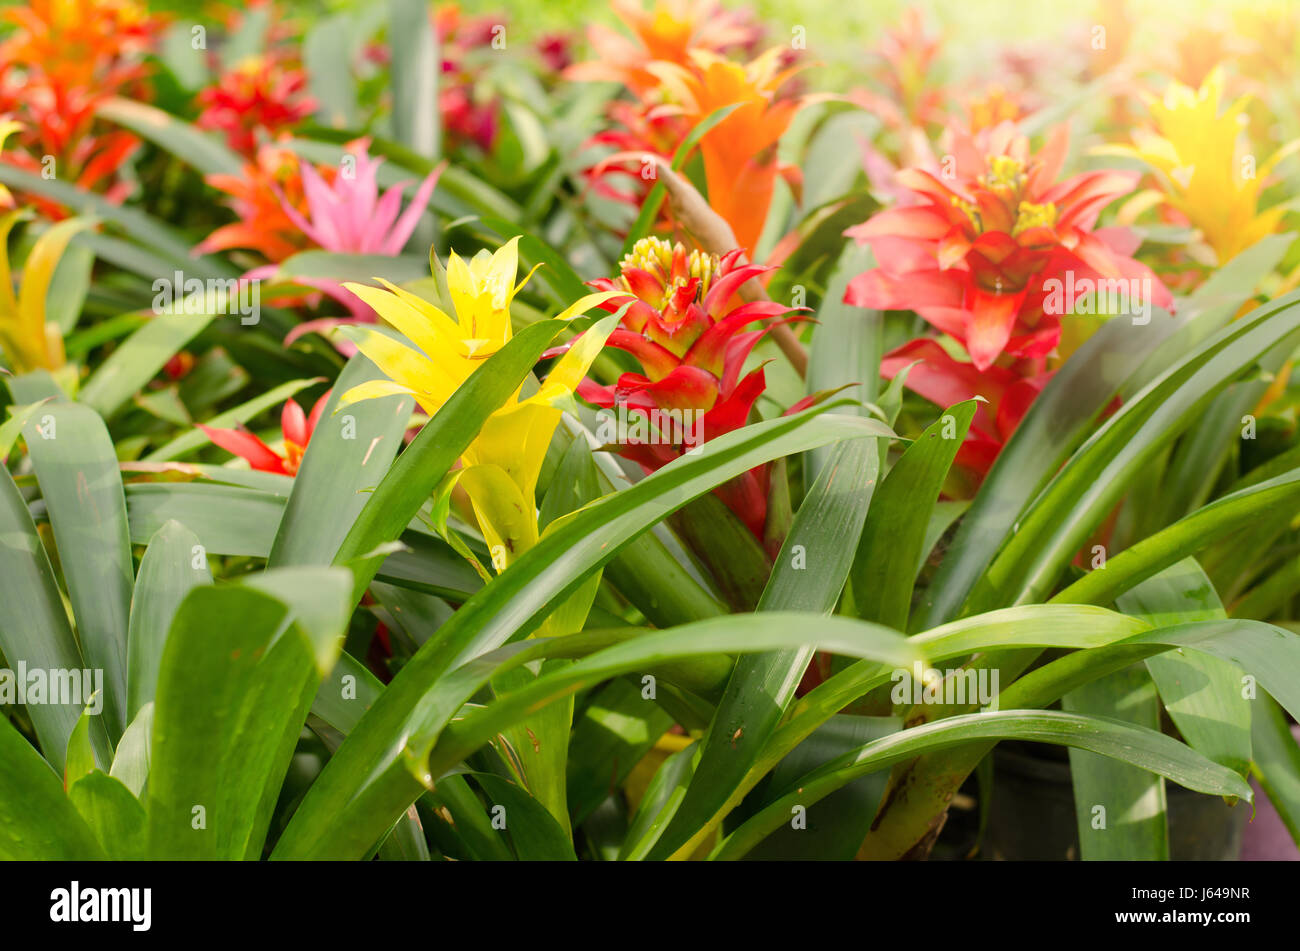 bromeliad blooming in garden Stock Photo